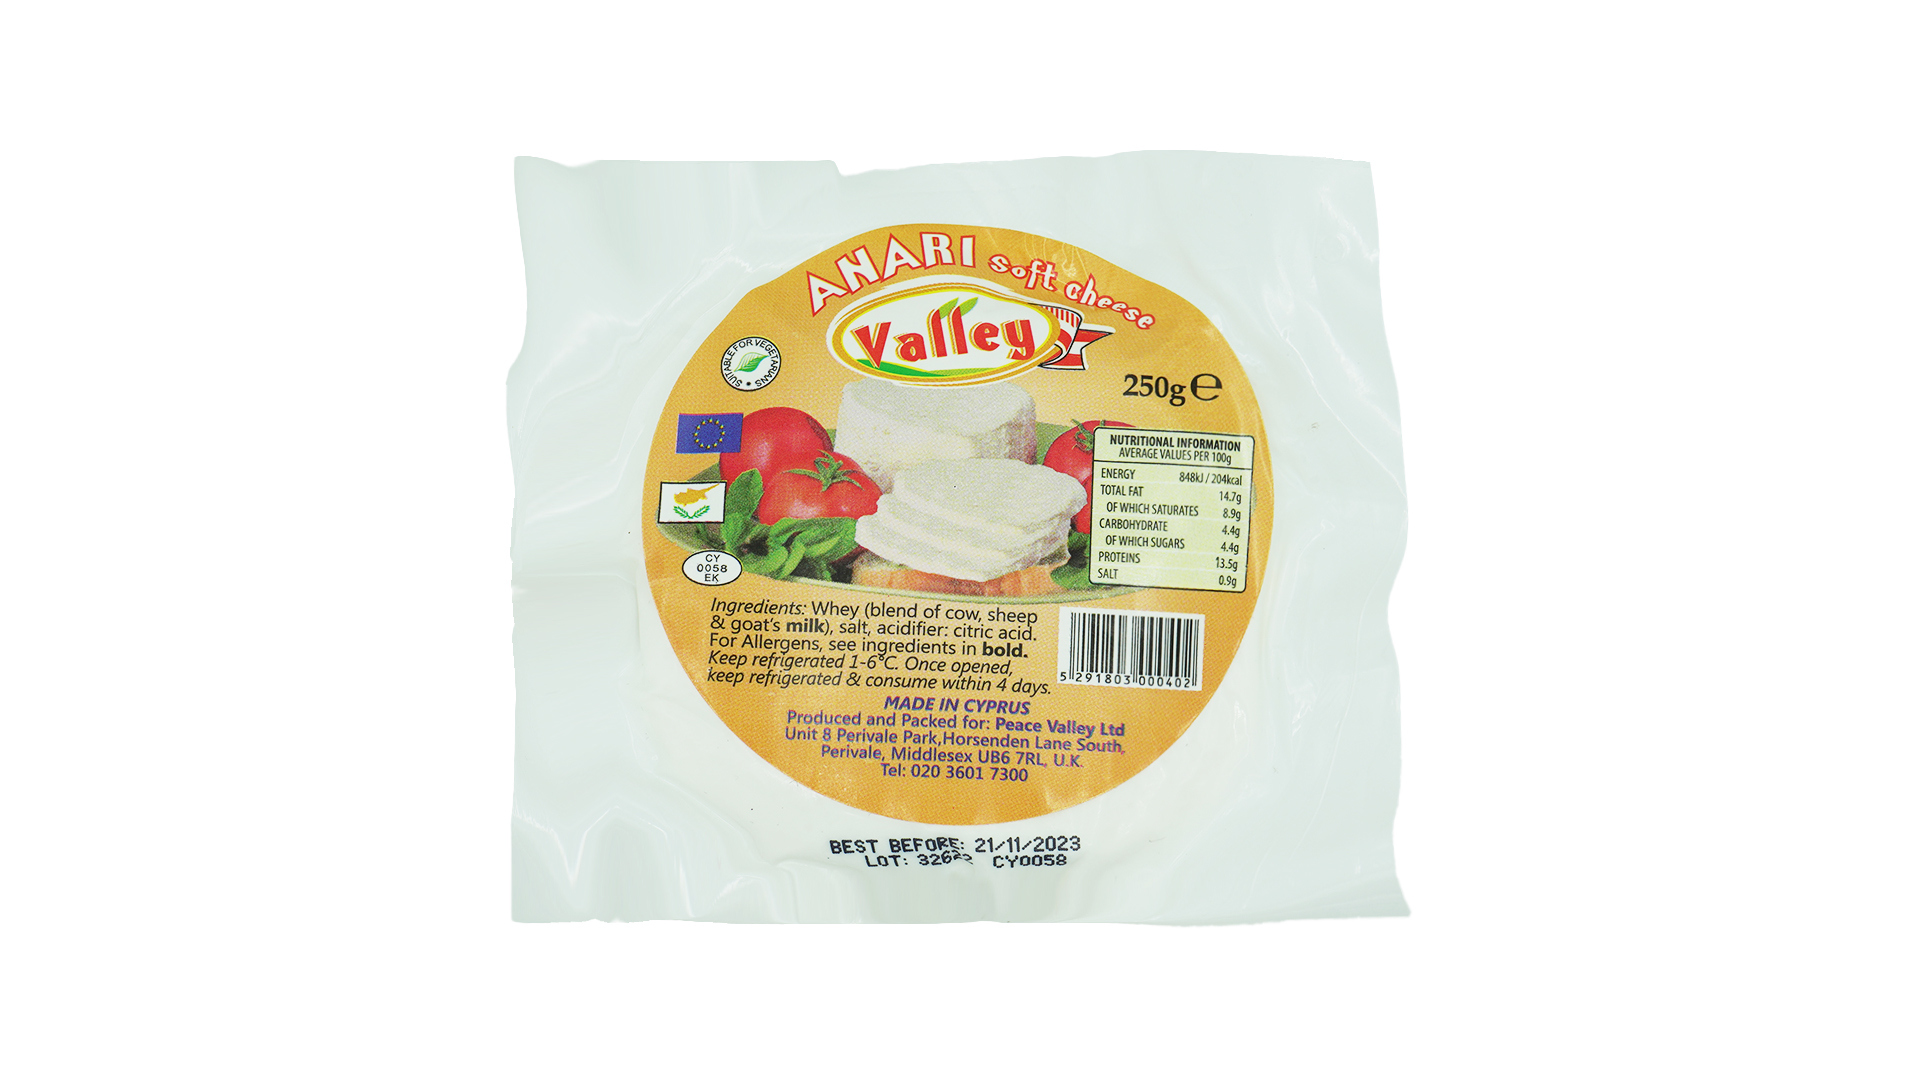 Valley anari soft cheese 250g 1